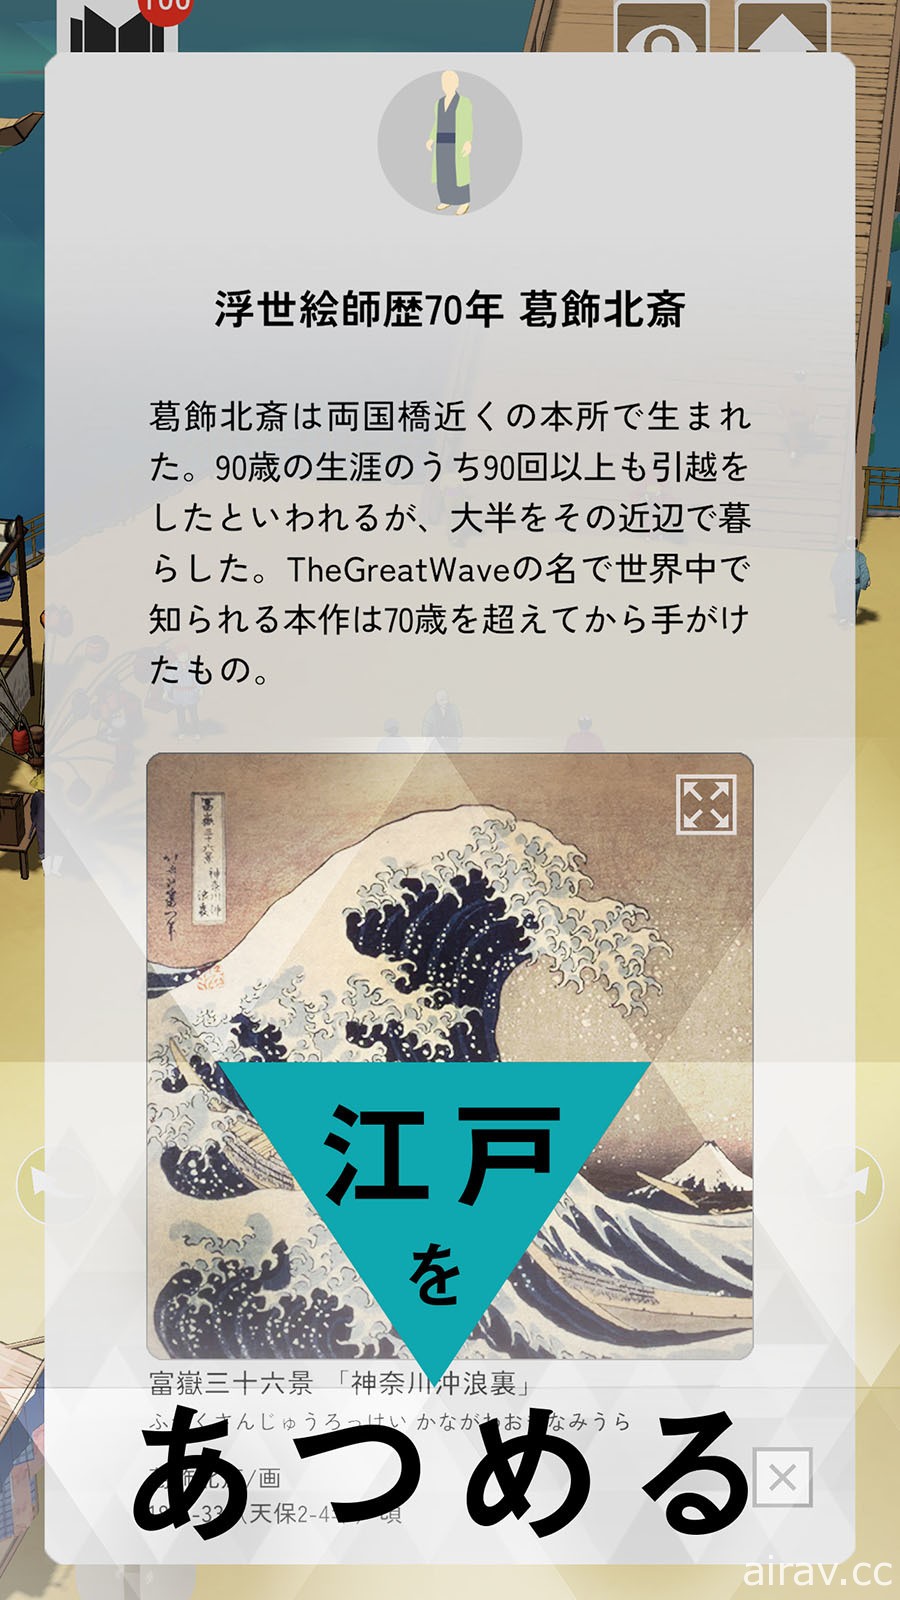 日本江户东京博物馆推出手机应用程式《Hyper 江户博》以线上形式展示馆内收藏